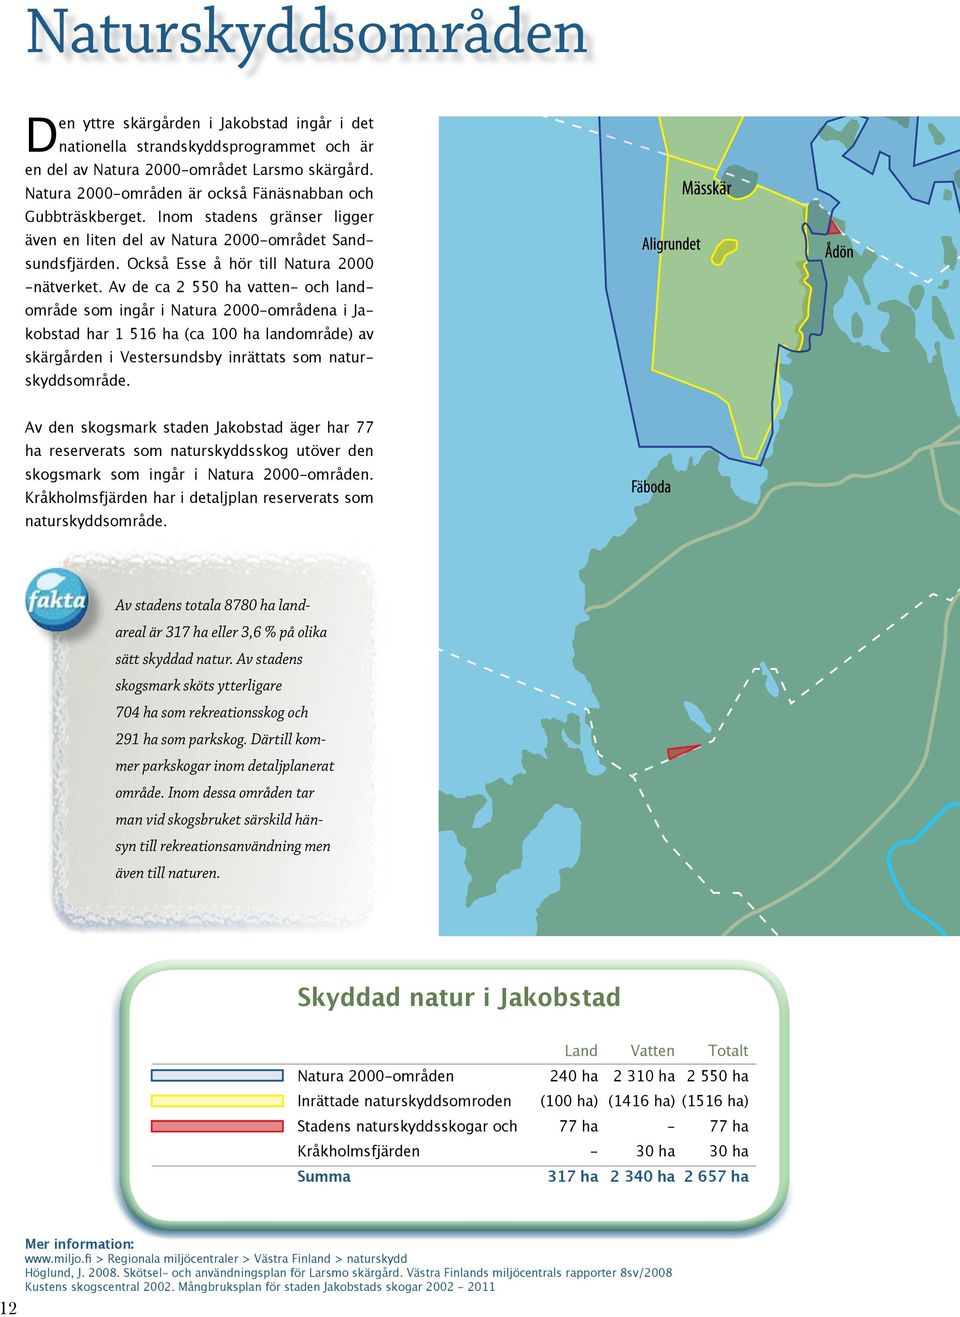 Av de ca 2 550 ha vatten- och landområde som ingår i Natura 2000-områdena i Jakobstad har 1 516 ha (ca 100 ha landområde) av skärgården i Vestersundsby inrättats som naturskyddsområde.